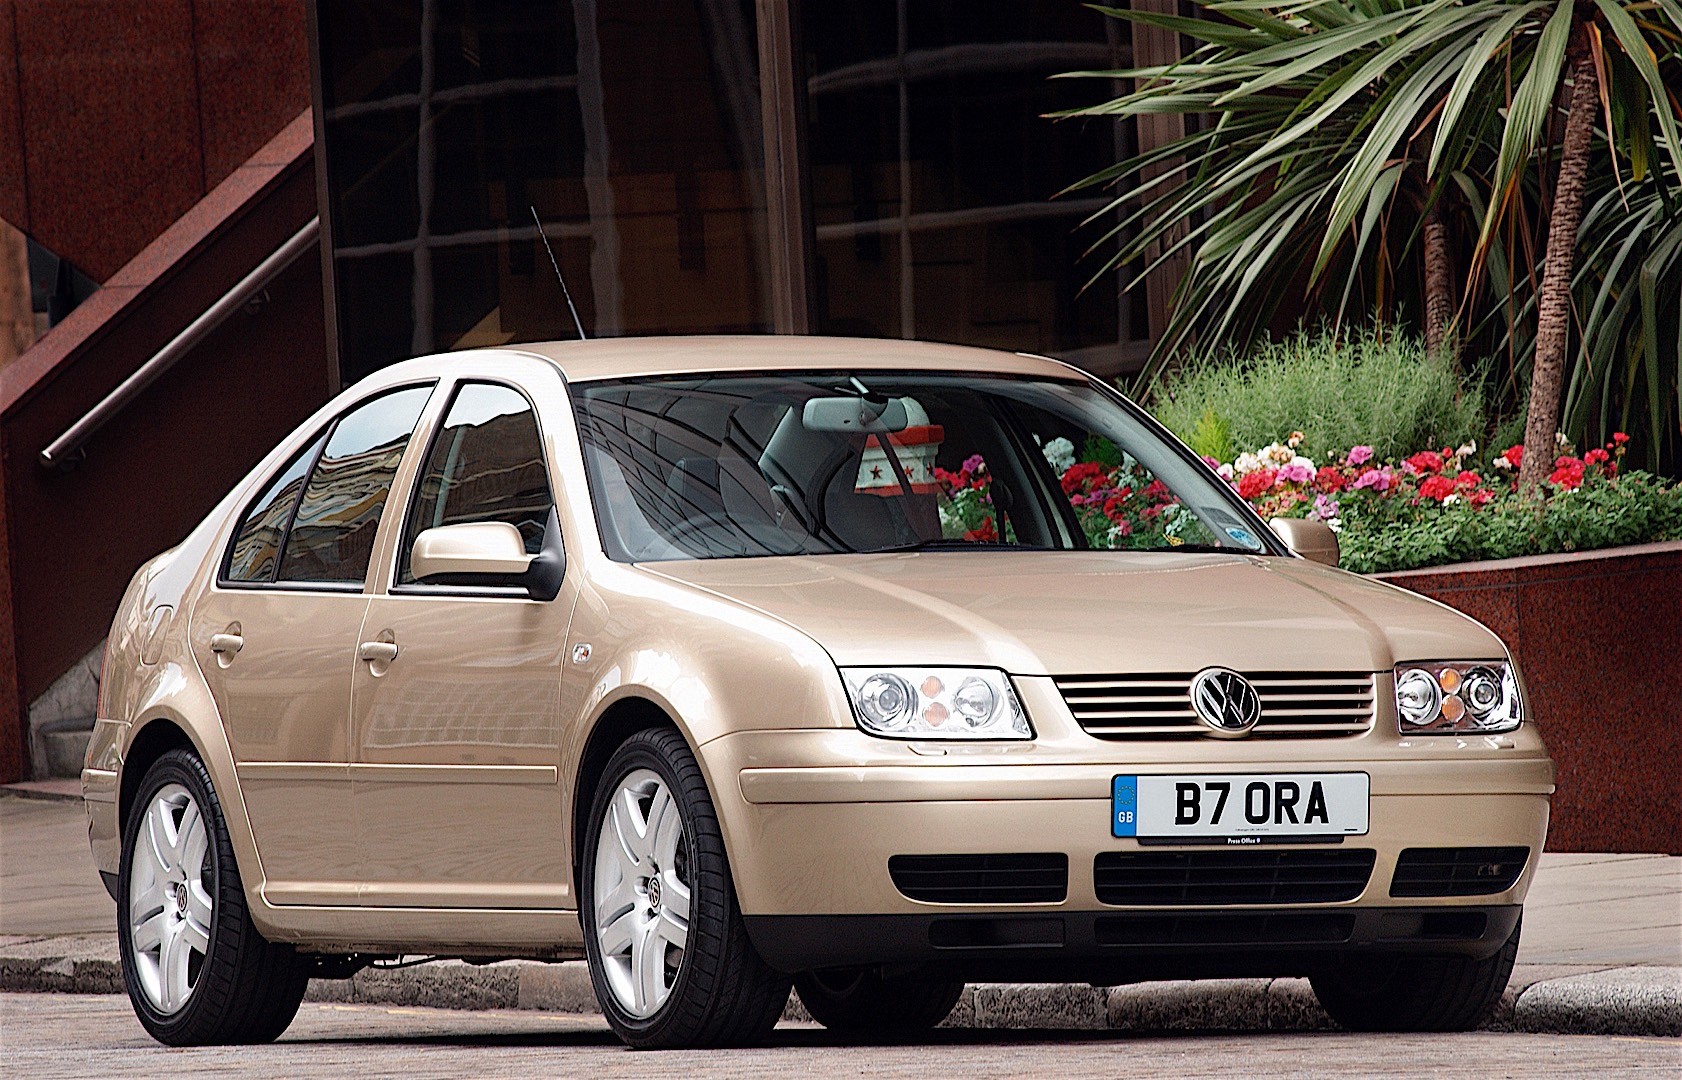 Volkswagen Bora 2000 Sérült - Autók ára